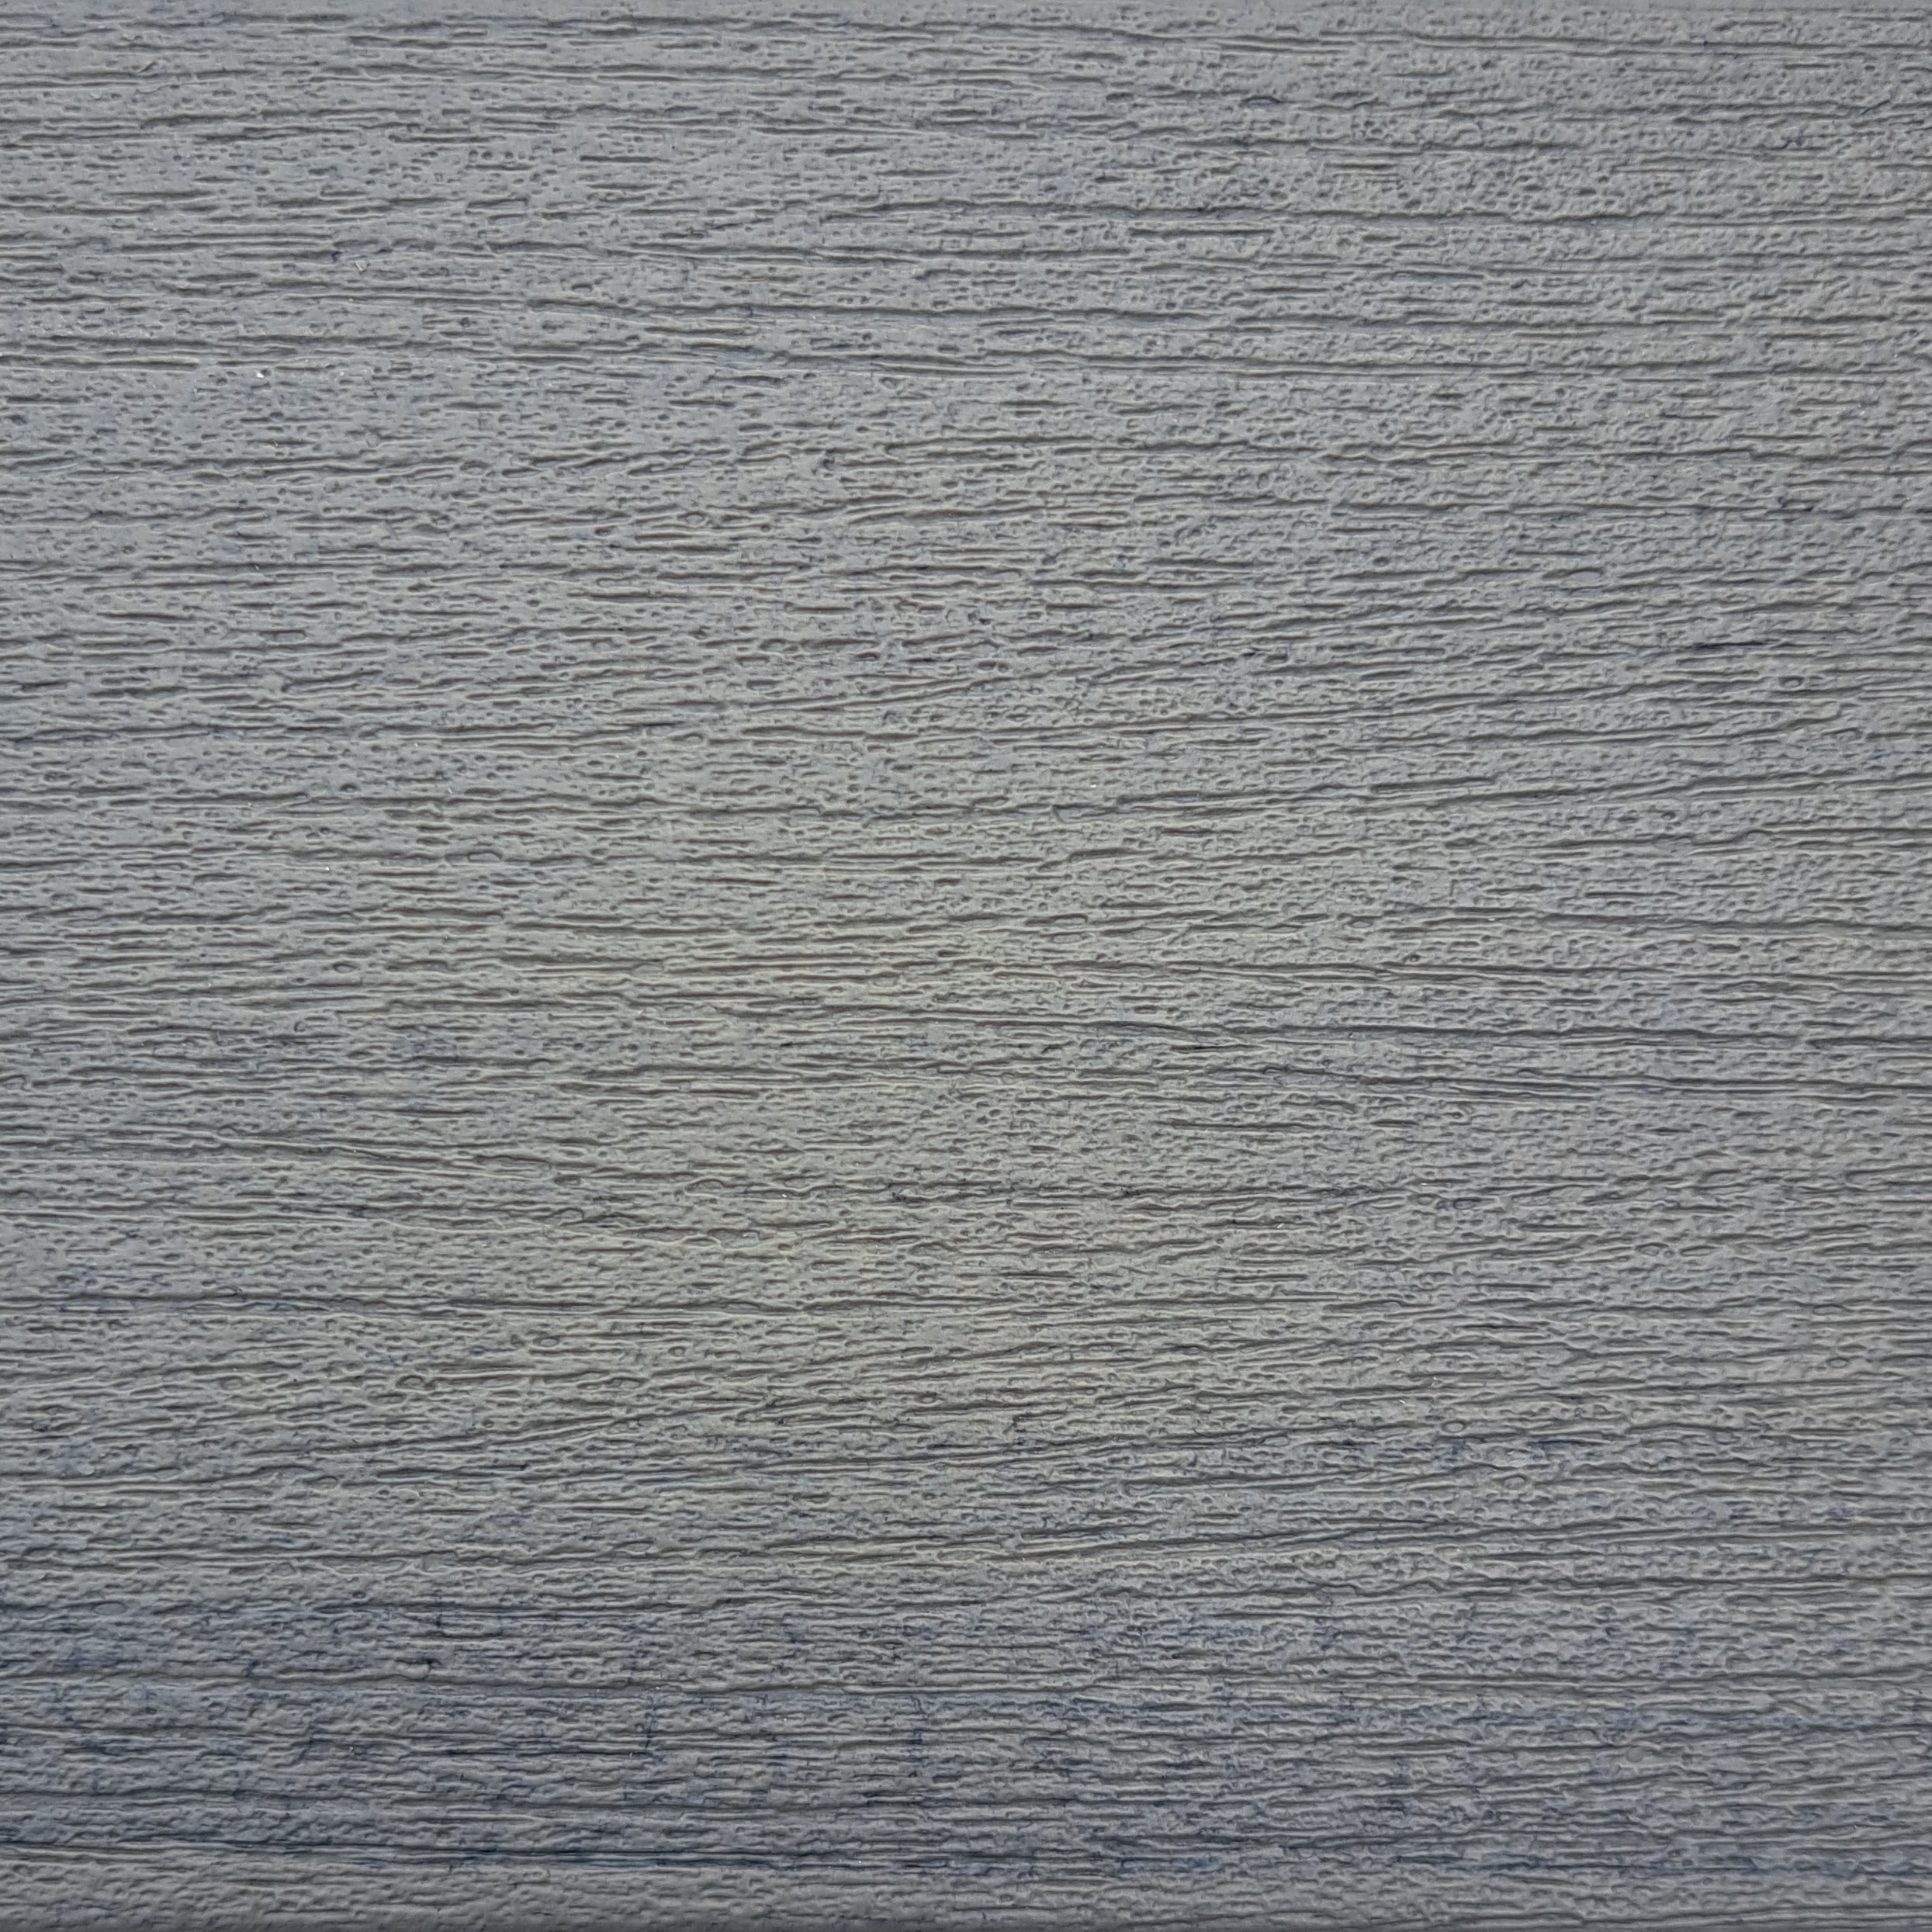 Texture of Timbertech Sea Salt Gray Decking